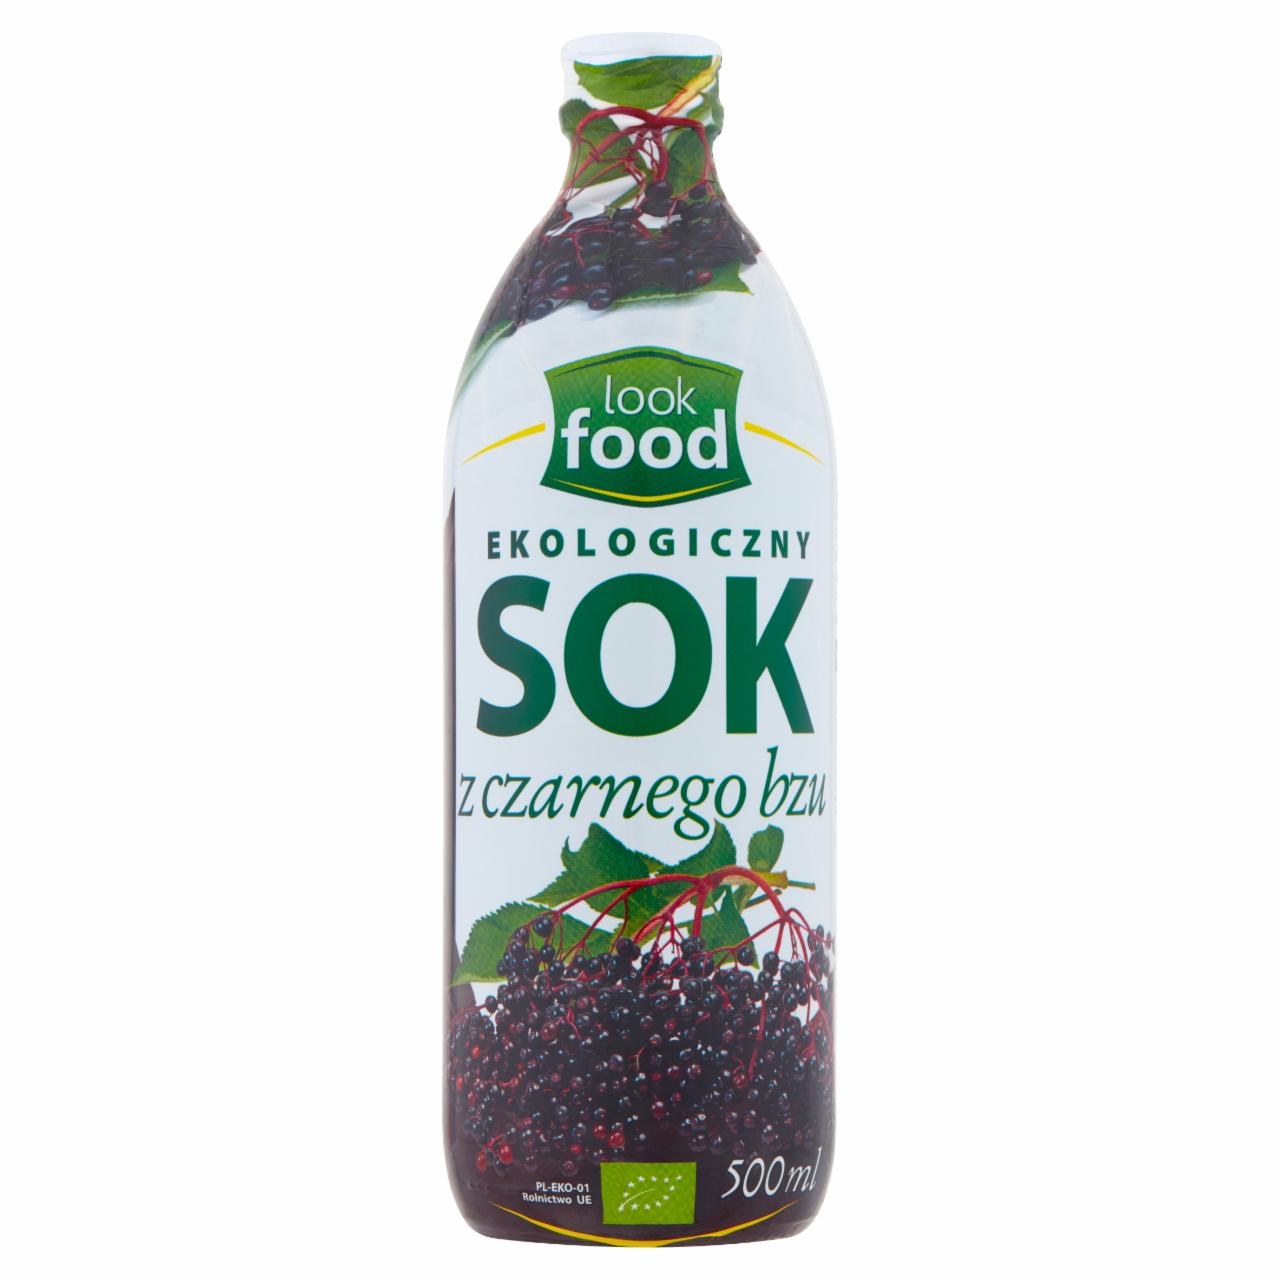 Zdjęcia - Look Food Ekologiczny sok z czarnego bzu 500 ml